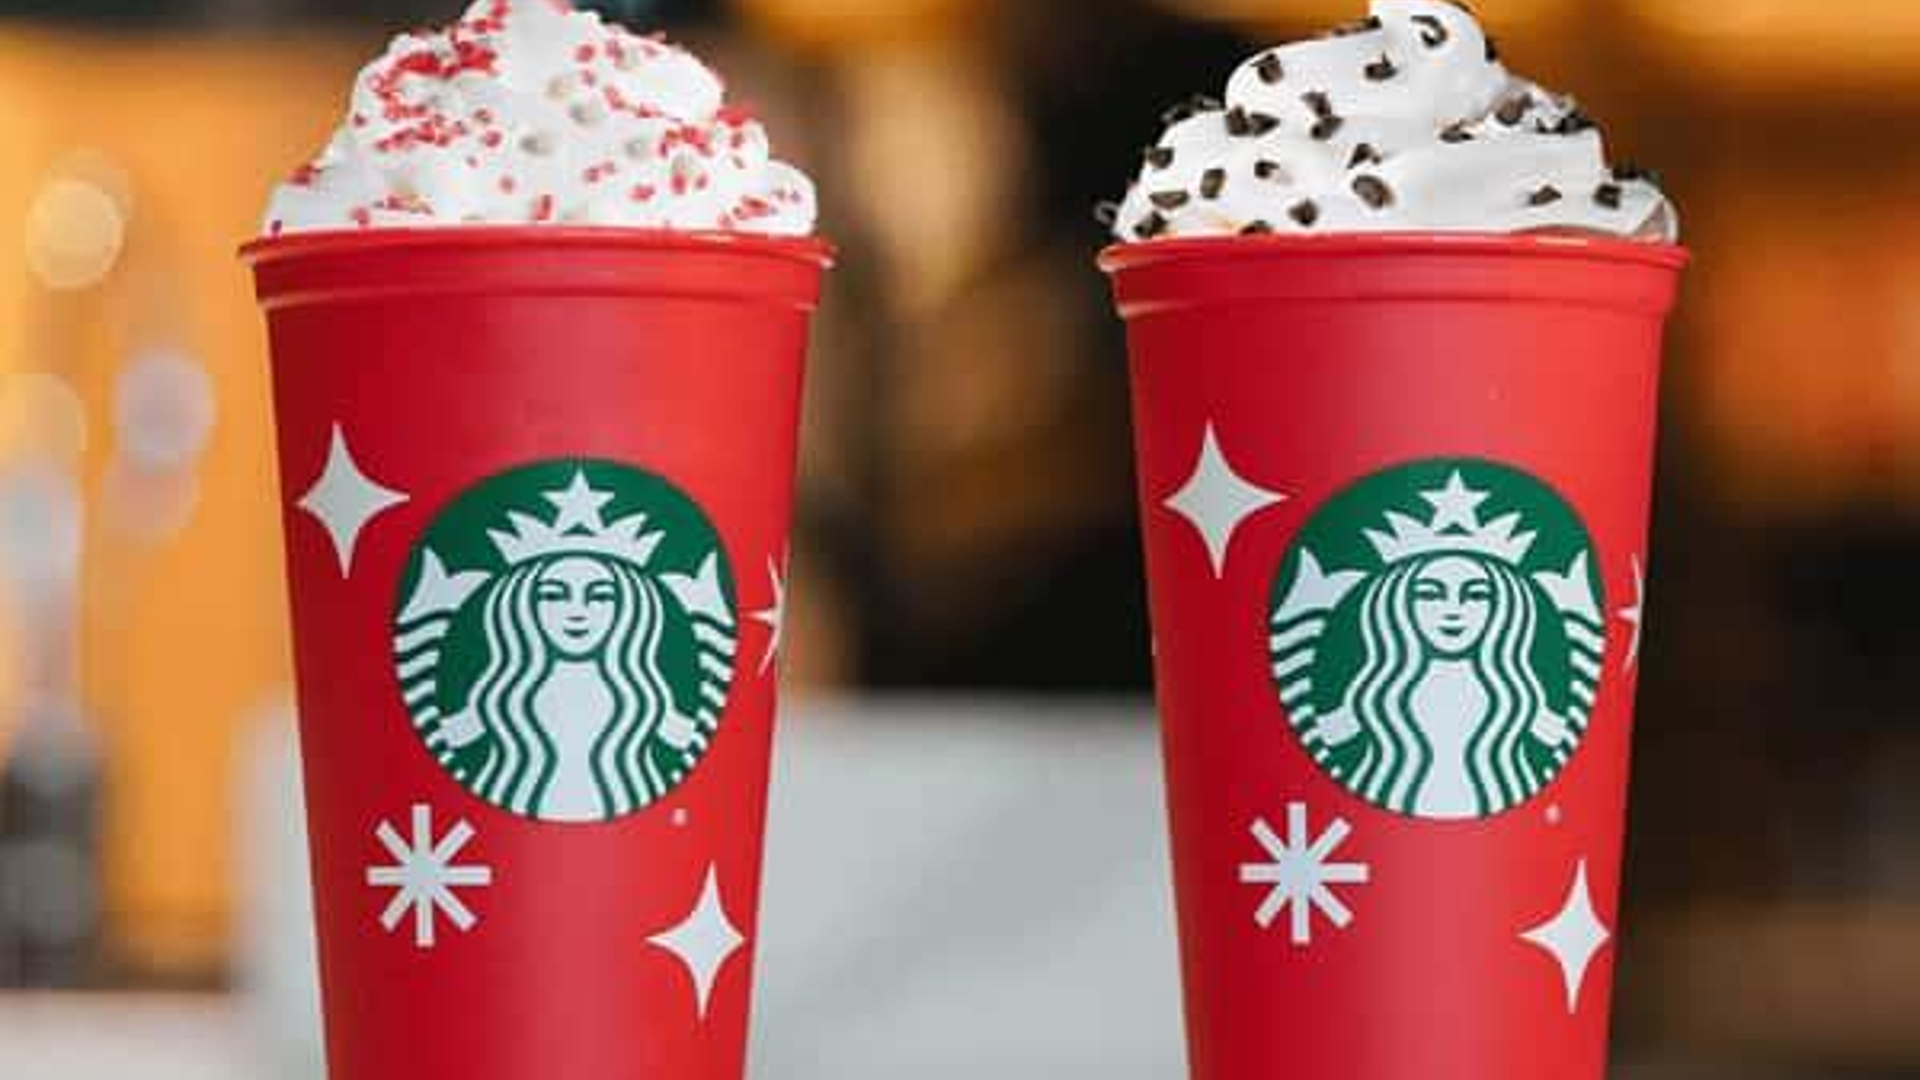 Starbucks Red Cup Day 2022 - Starbucks Red Cup Day Is November 17